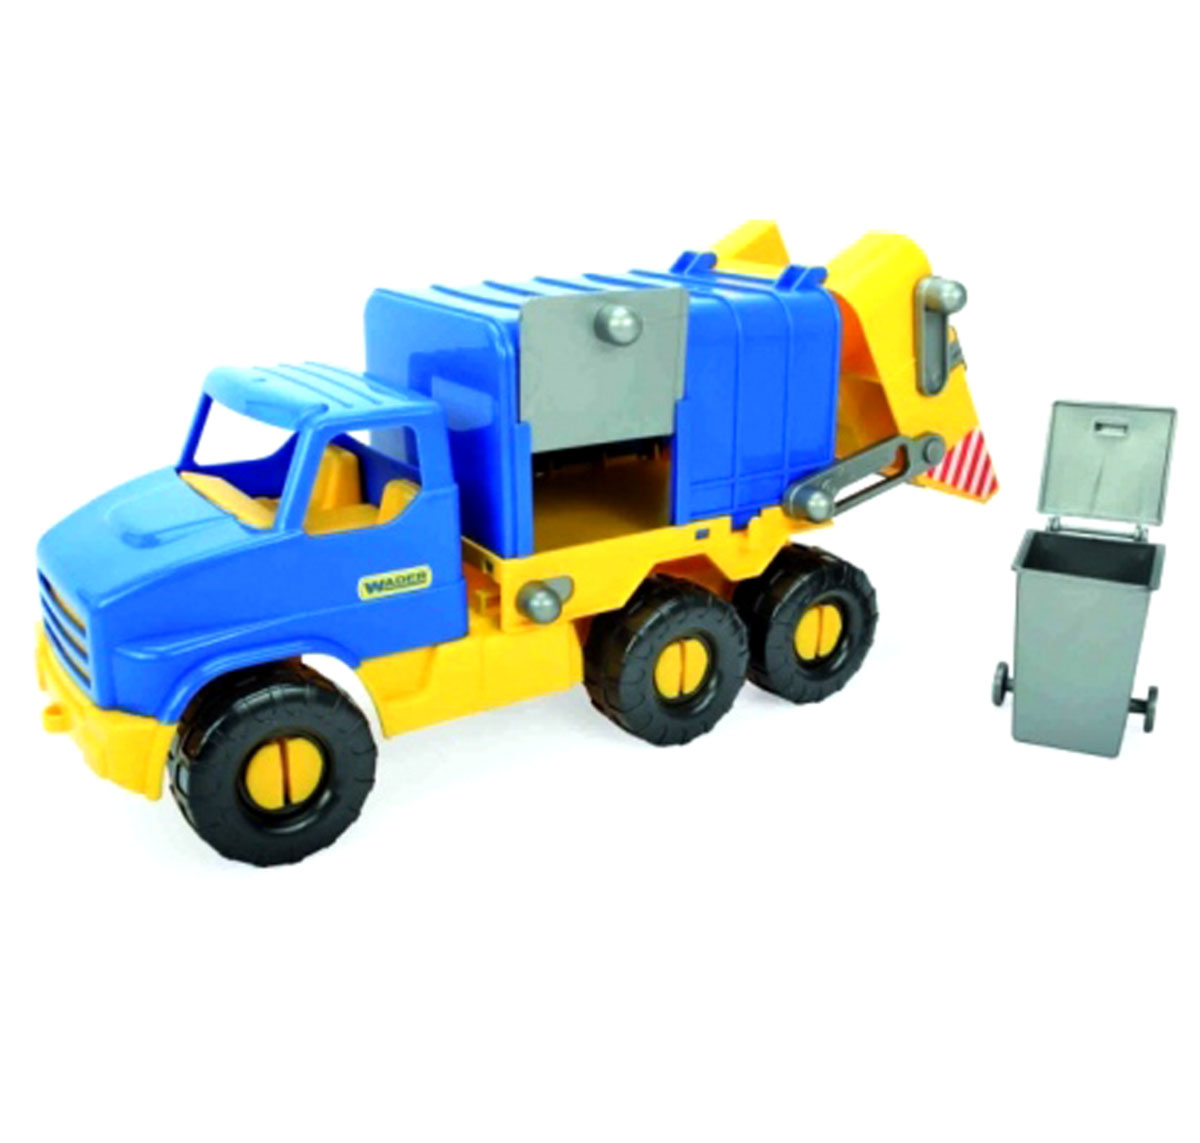 Дитяче іграшкове авто 'City truck' сміттєвоз